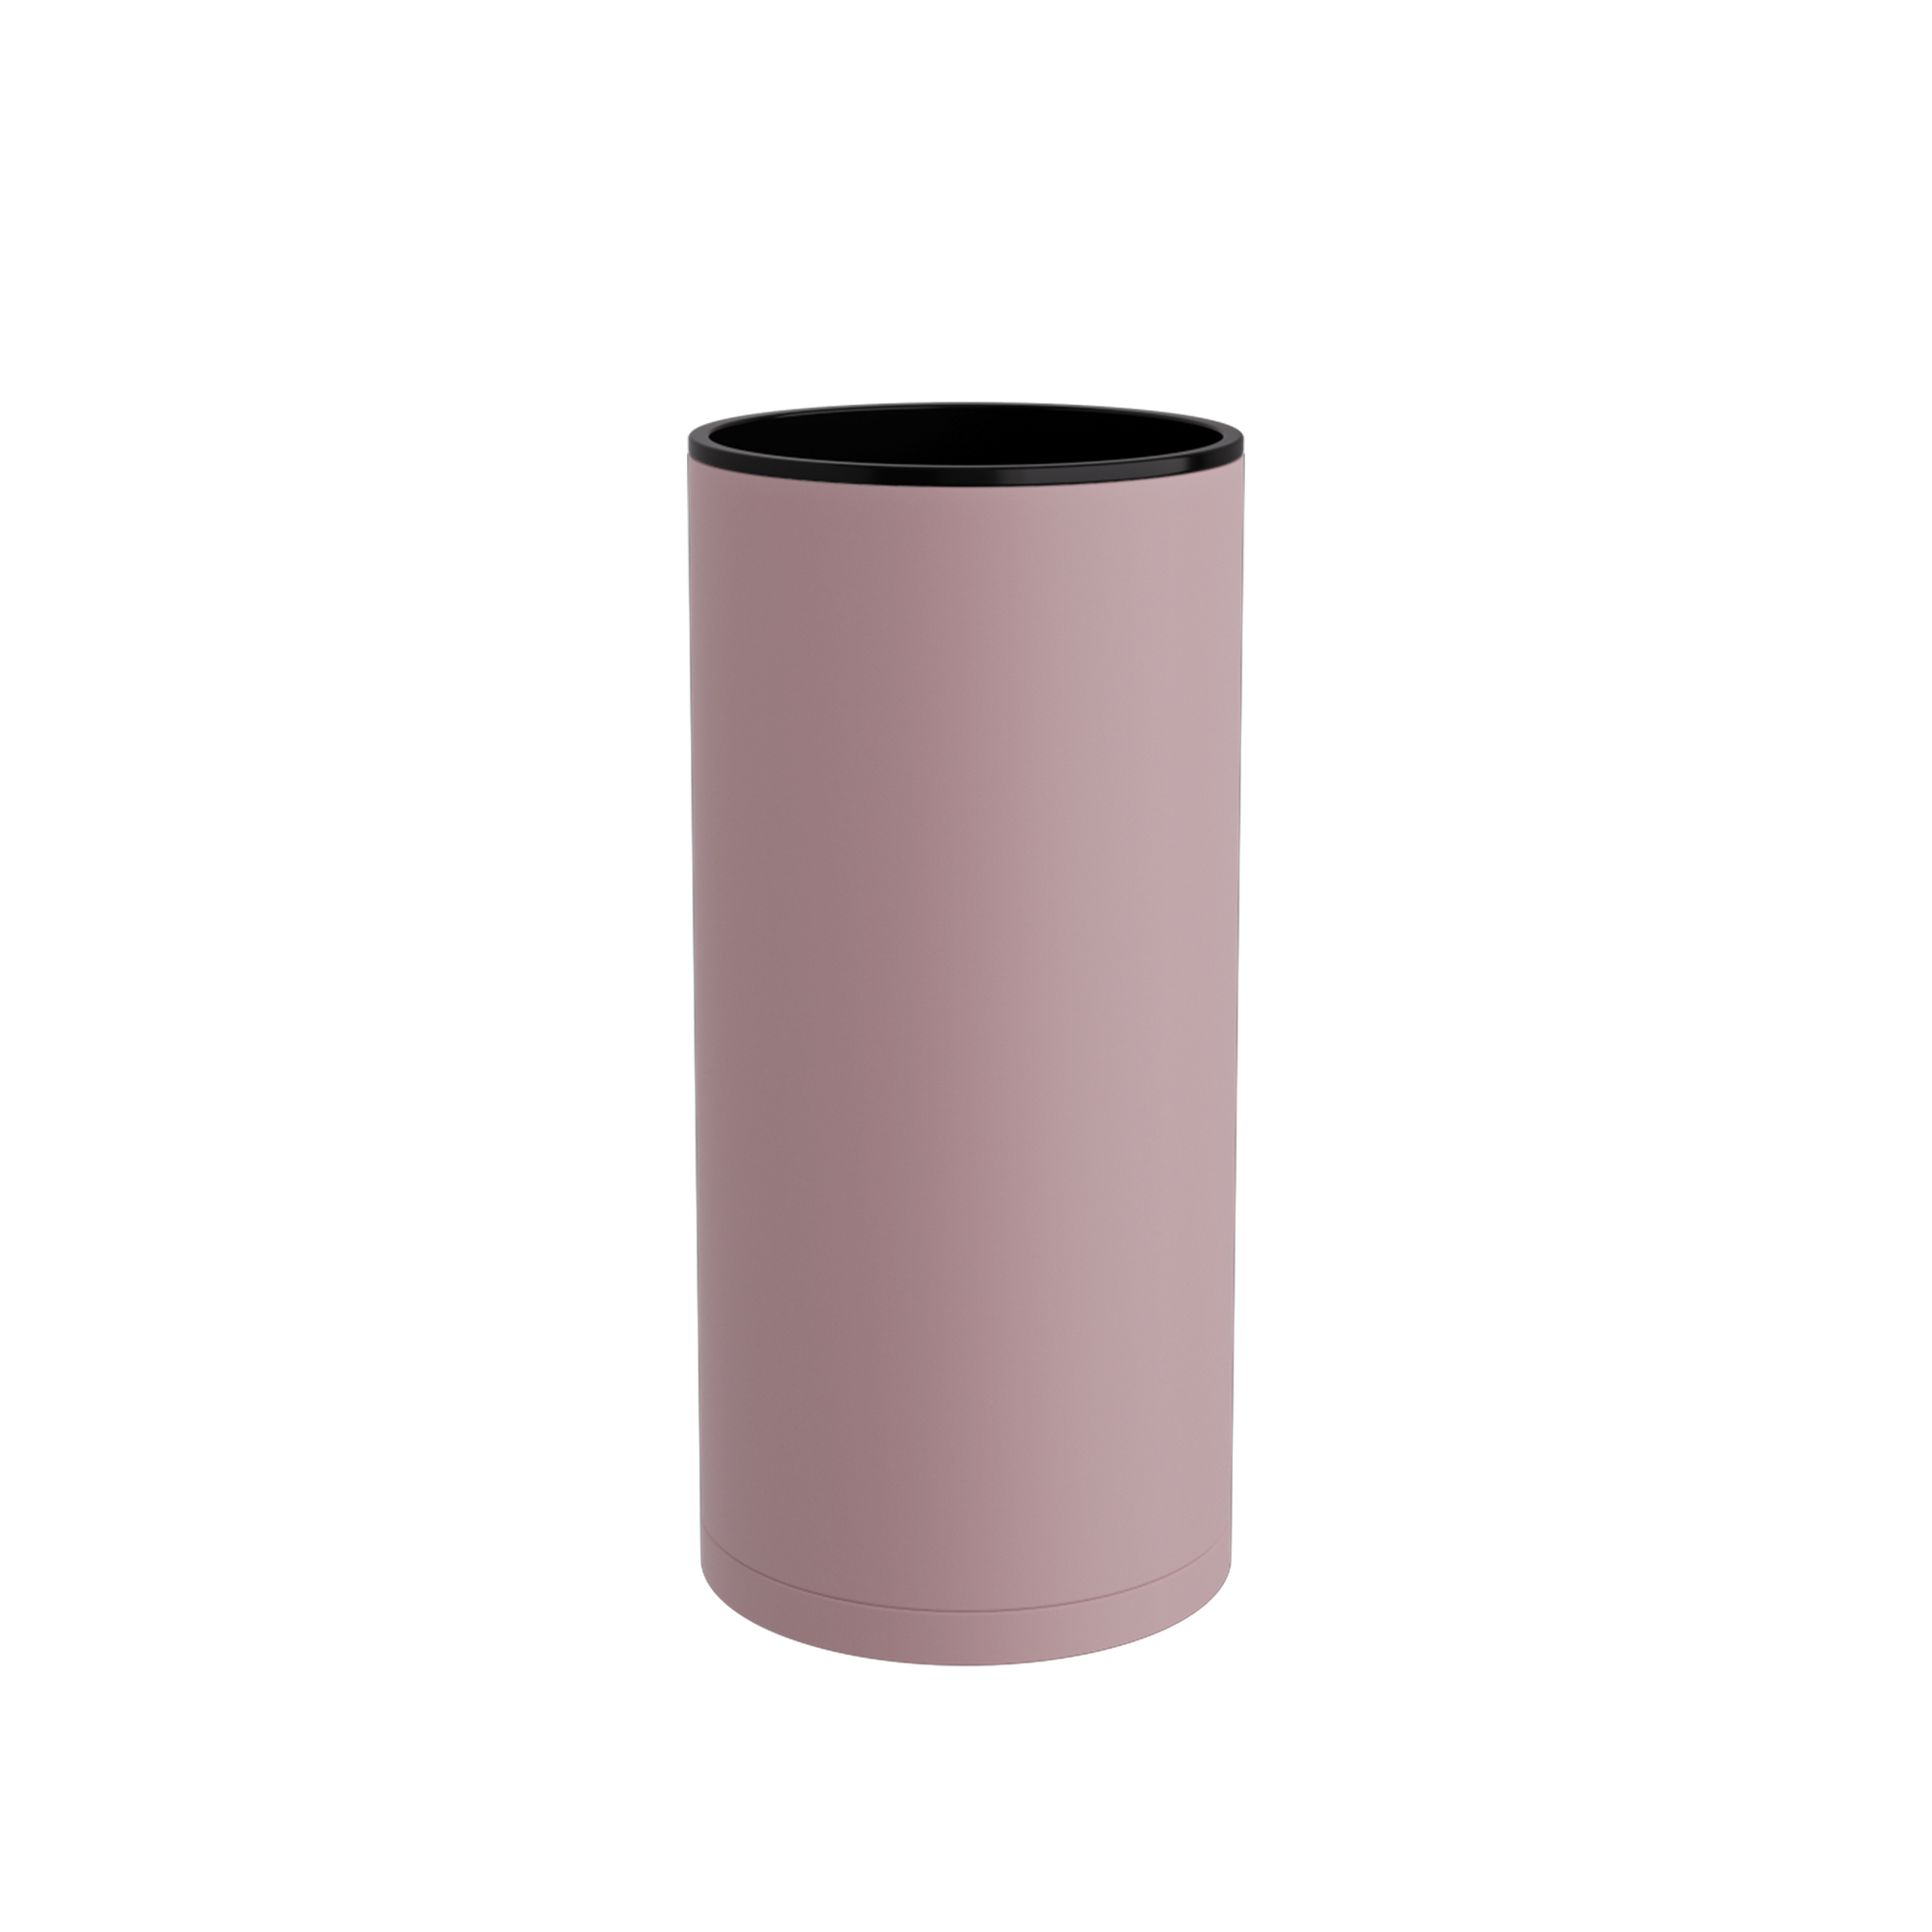 Ποτηροθήκη Ορειχάλκινη Matt Pink Pam & Co 6x12εκ. 89-303 (Χρώμα: Ροζ, Υλικό: Ορείχαλκος) - Pam & Co - 89-303 208079